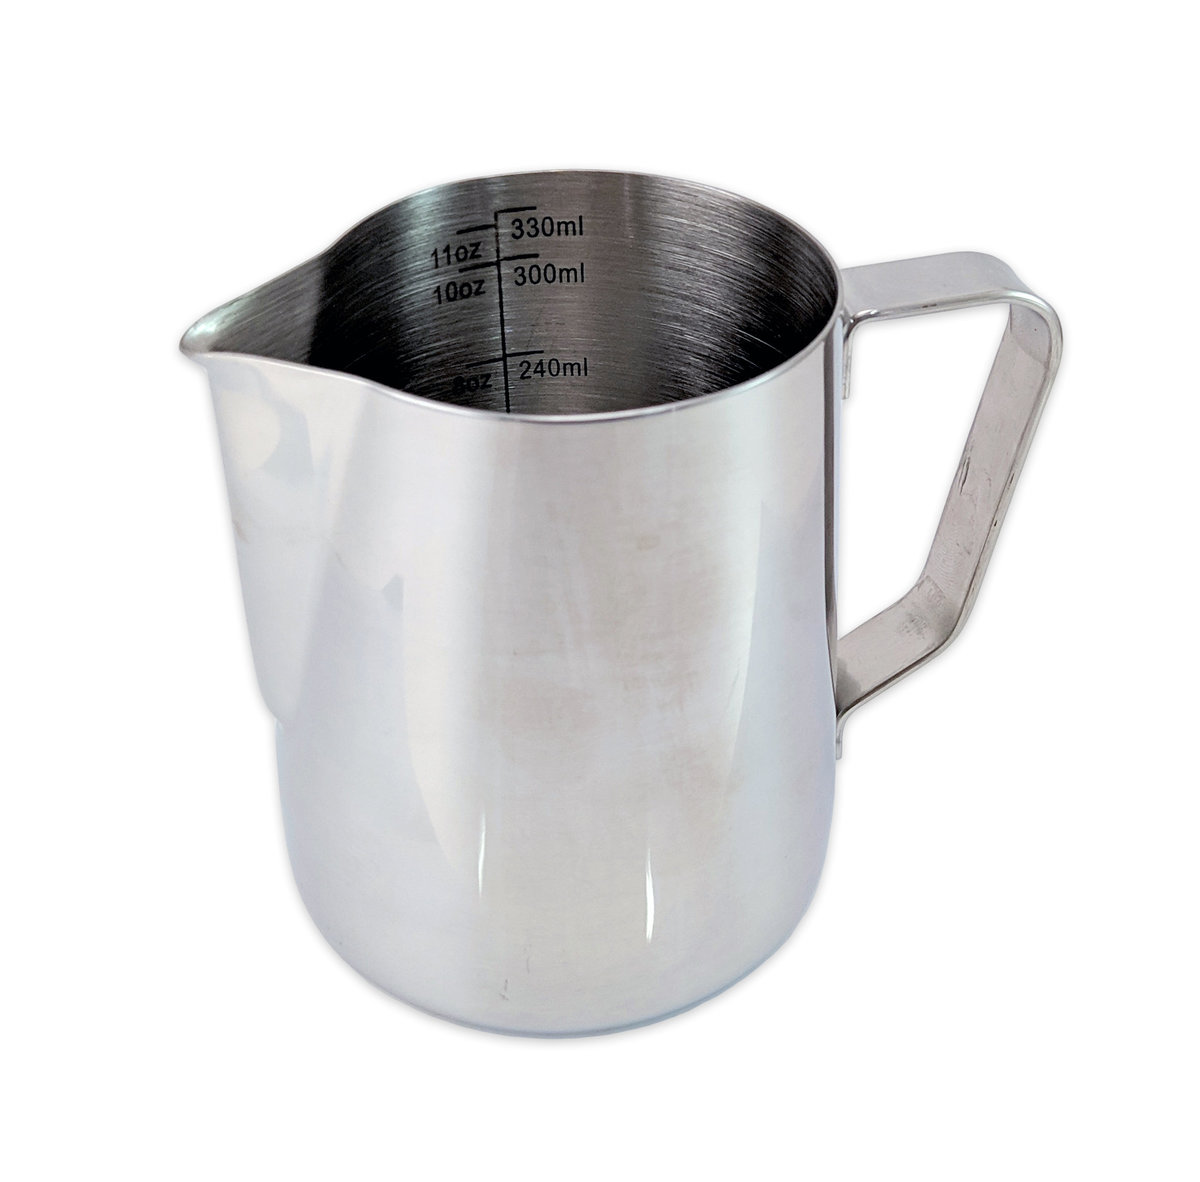 鐳射刻度咖啡拉花奶杯 ‧ 不銹鋼 330ml (61030-350)